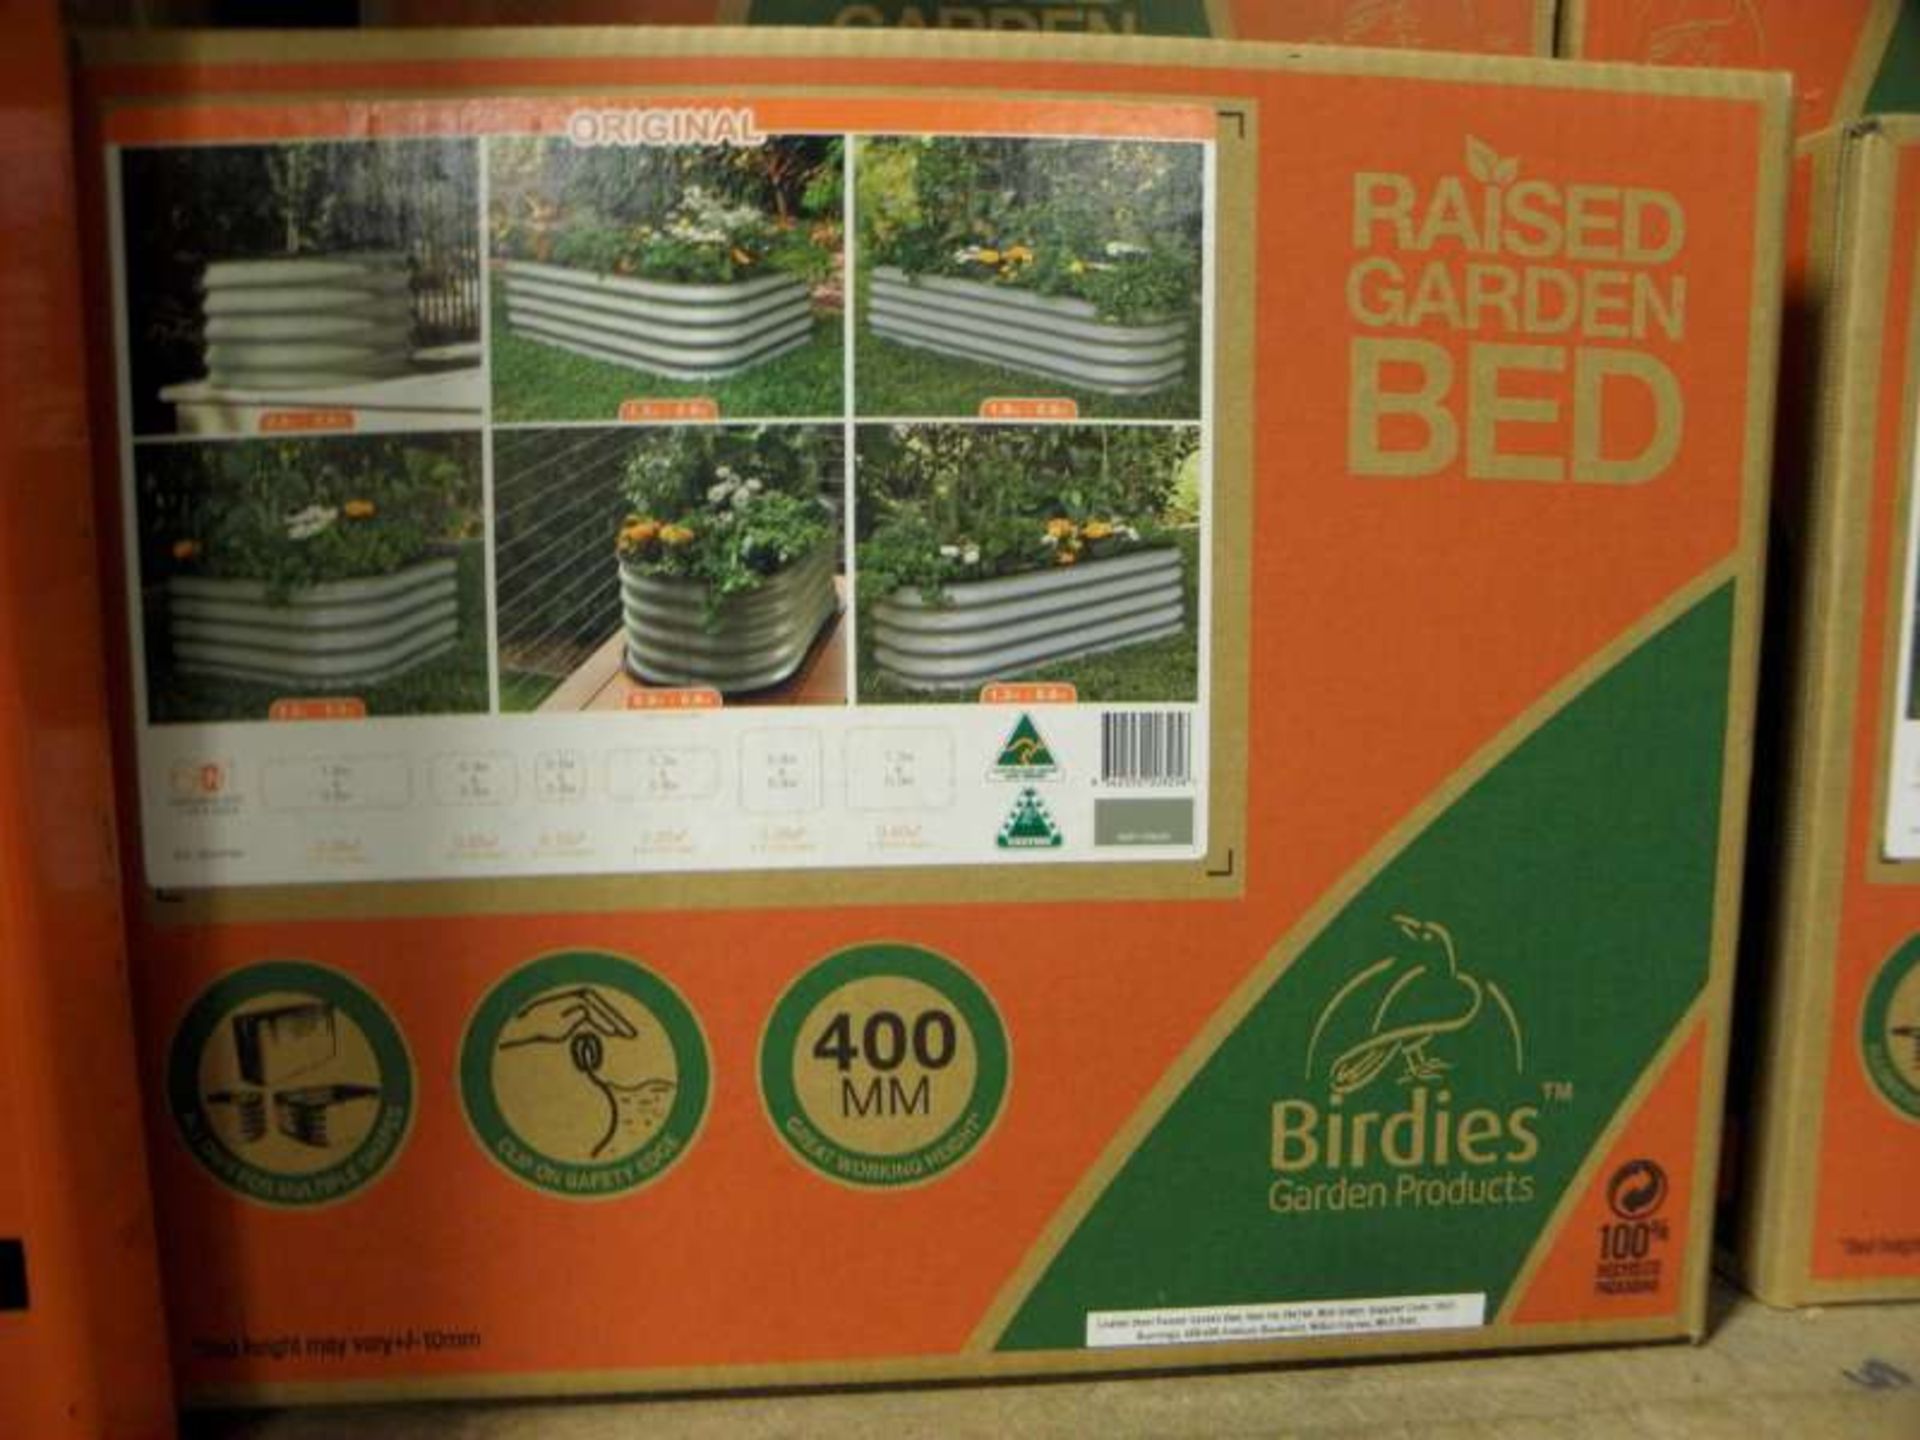 8 X BIRDIES GARDEN PRODUCTS 6 IN 1 GARDEN BEDS IN GREEN